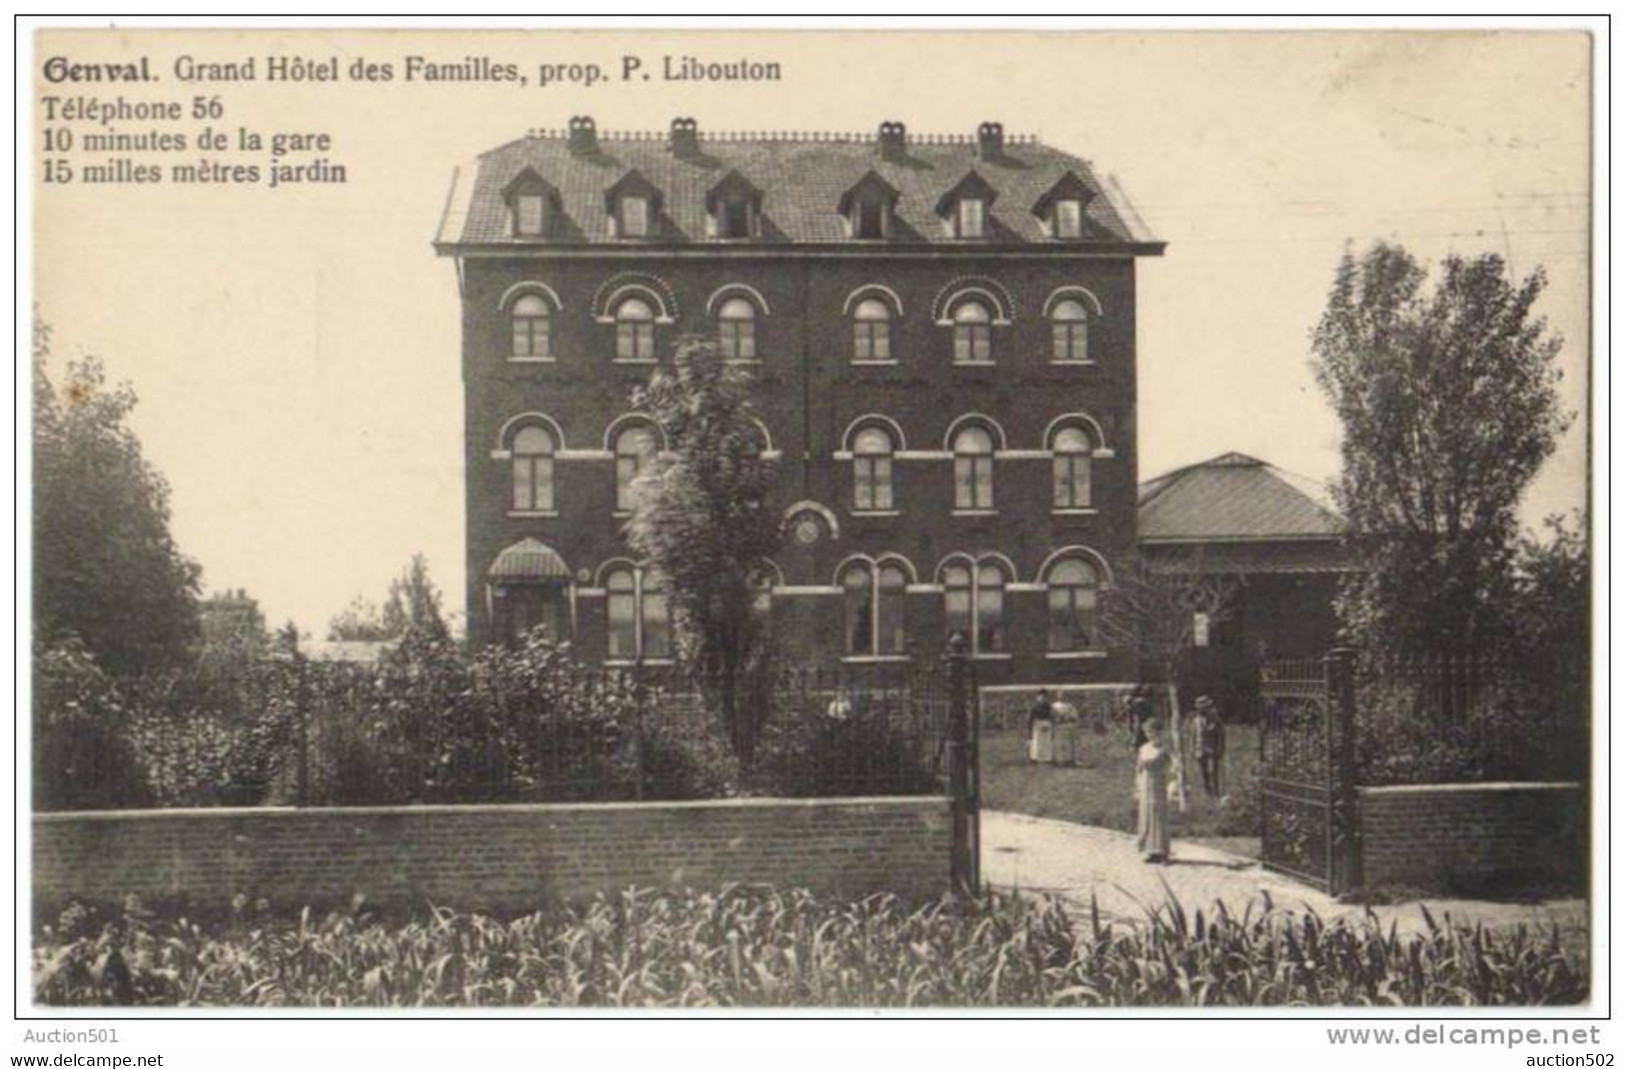 08641g HOTEL Des Familles - P. Libouton Propriétaire - Genval - Rixensart